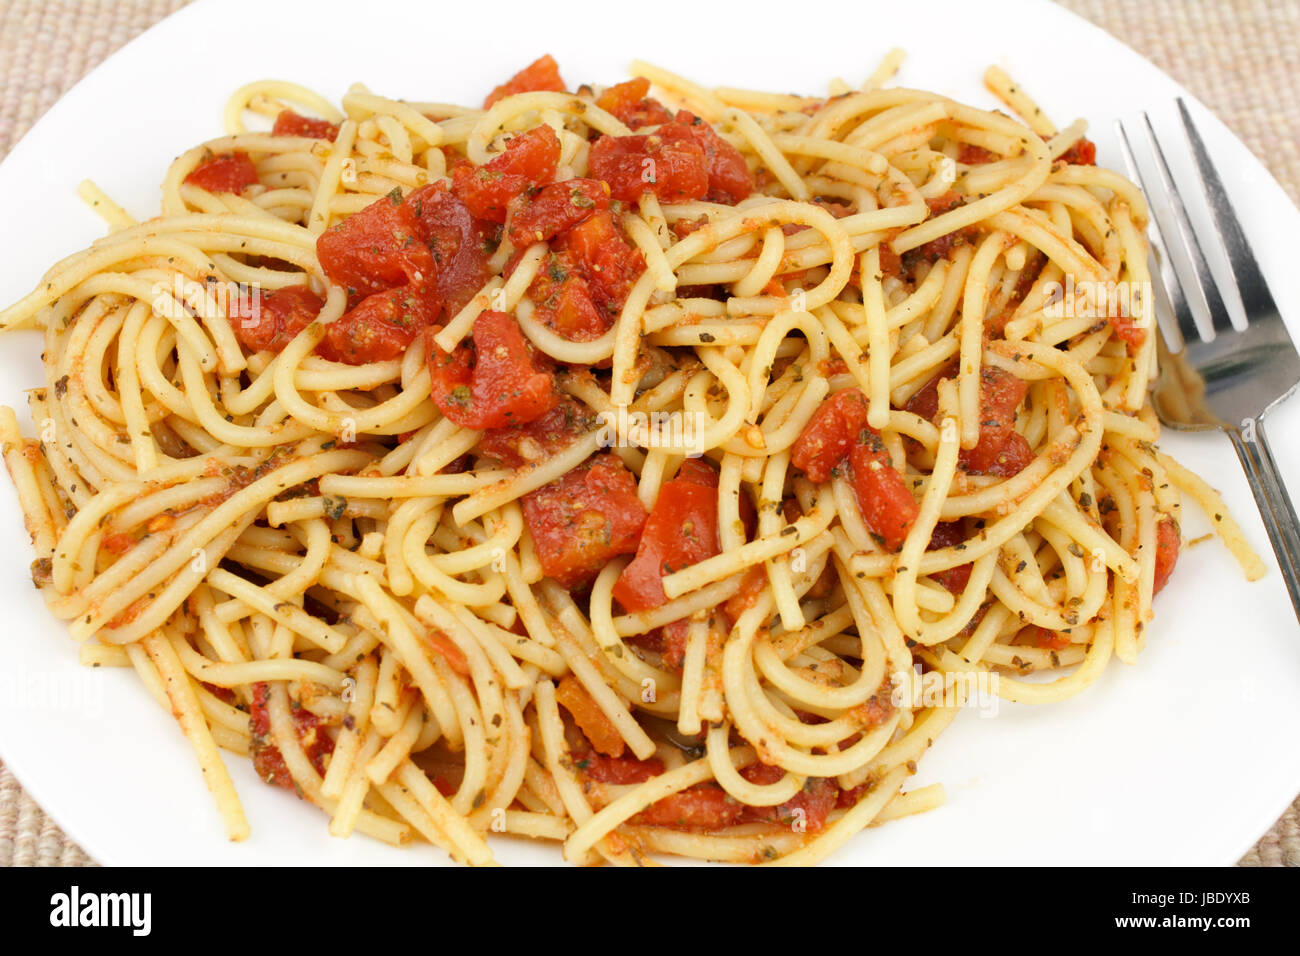 Cuocere il grano duro spaghetti miscelato con tagliare i pomodori e le erbe in un bianco rotondo piatto posto su un panno tan luogo mat. Foto Stock